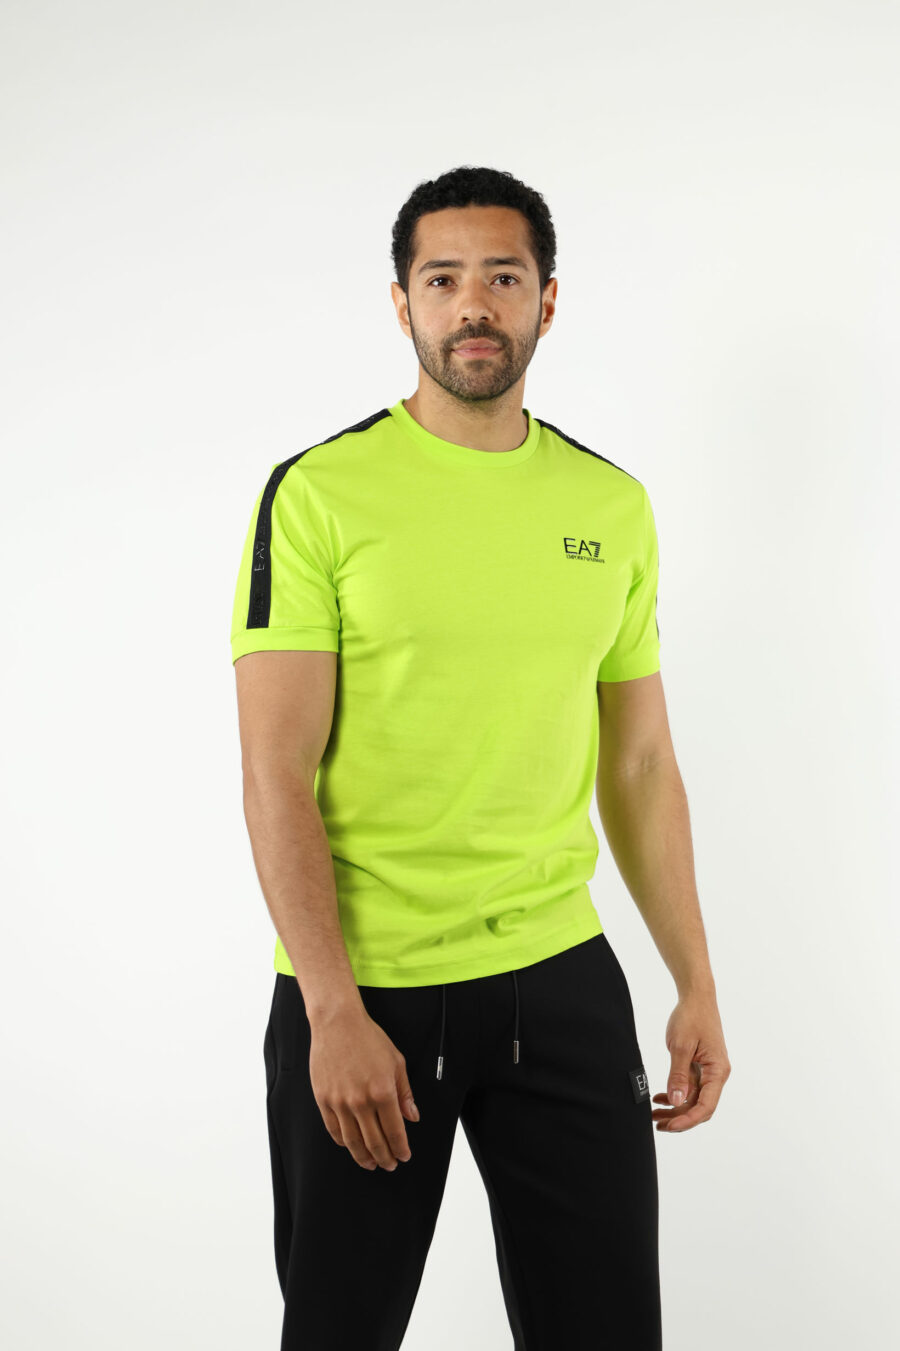 T-shirt verde-limão com mini-logotipo "lux identity" preto - 110950